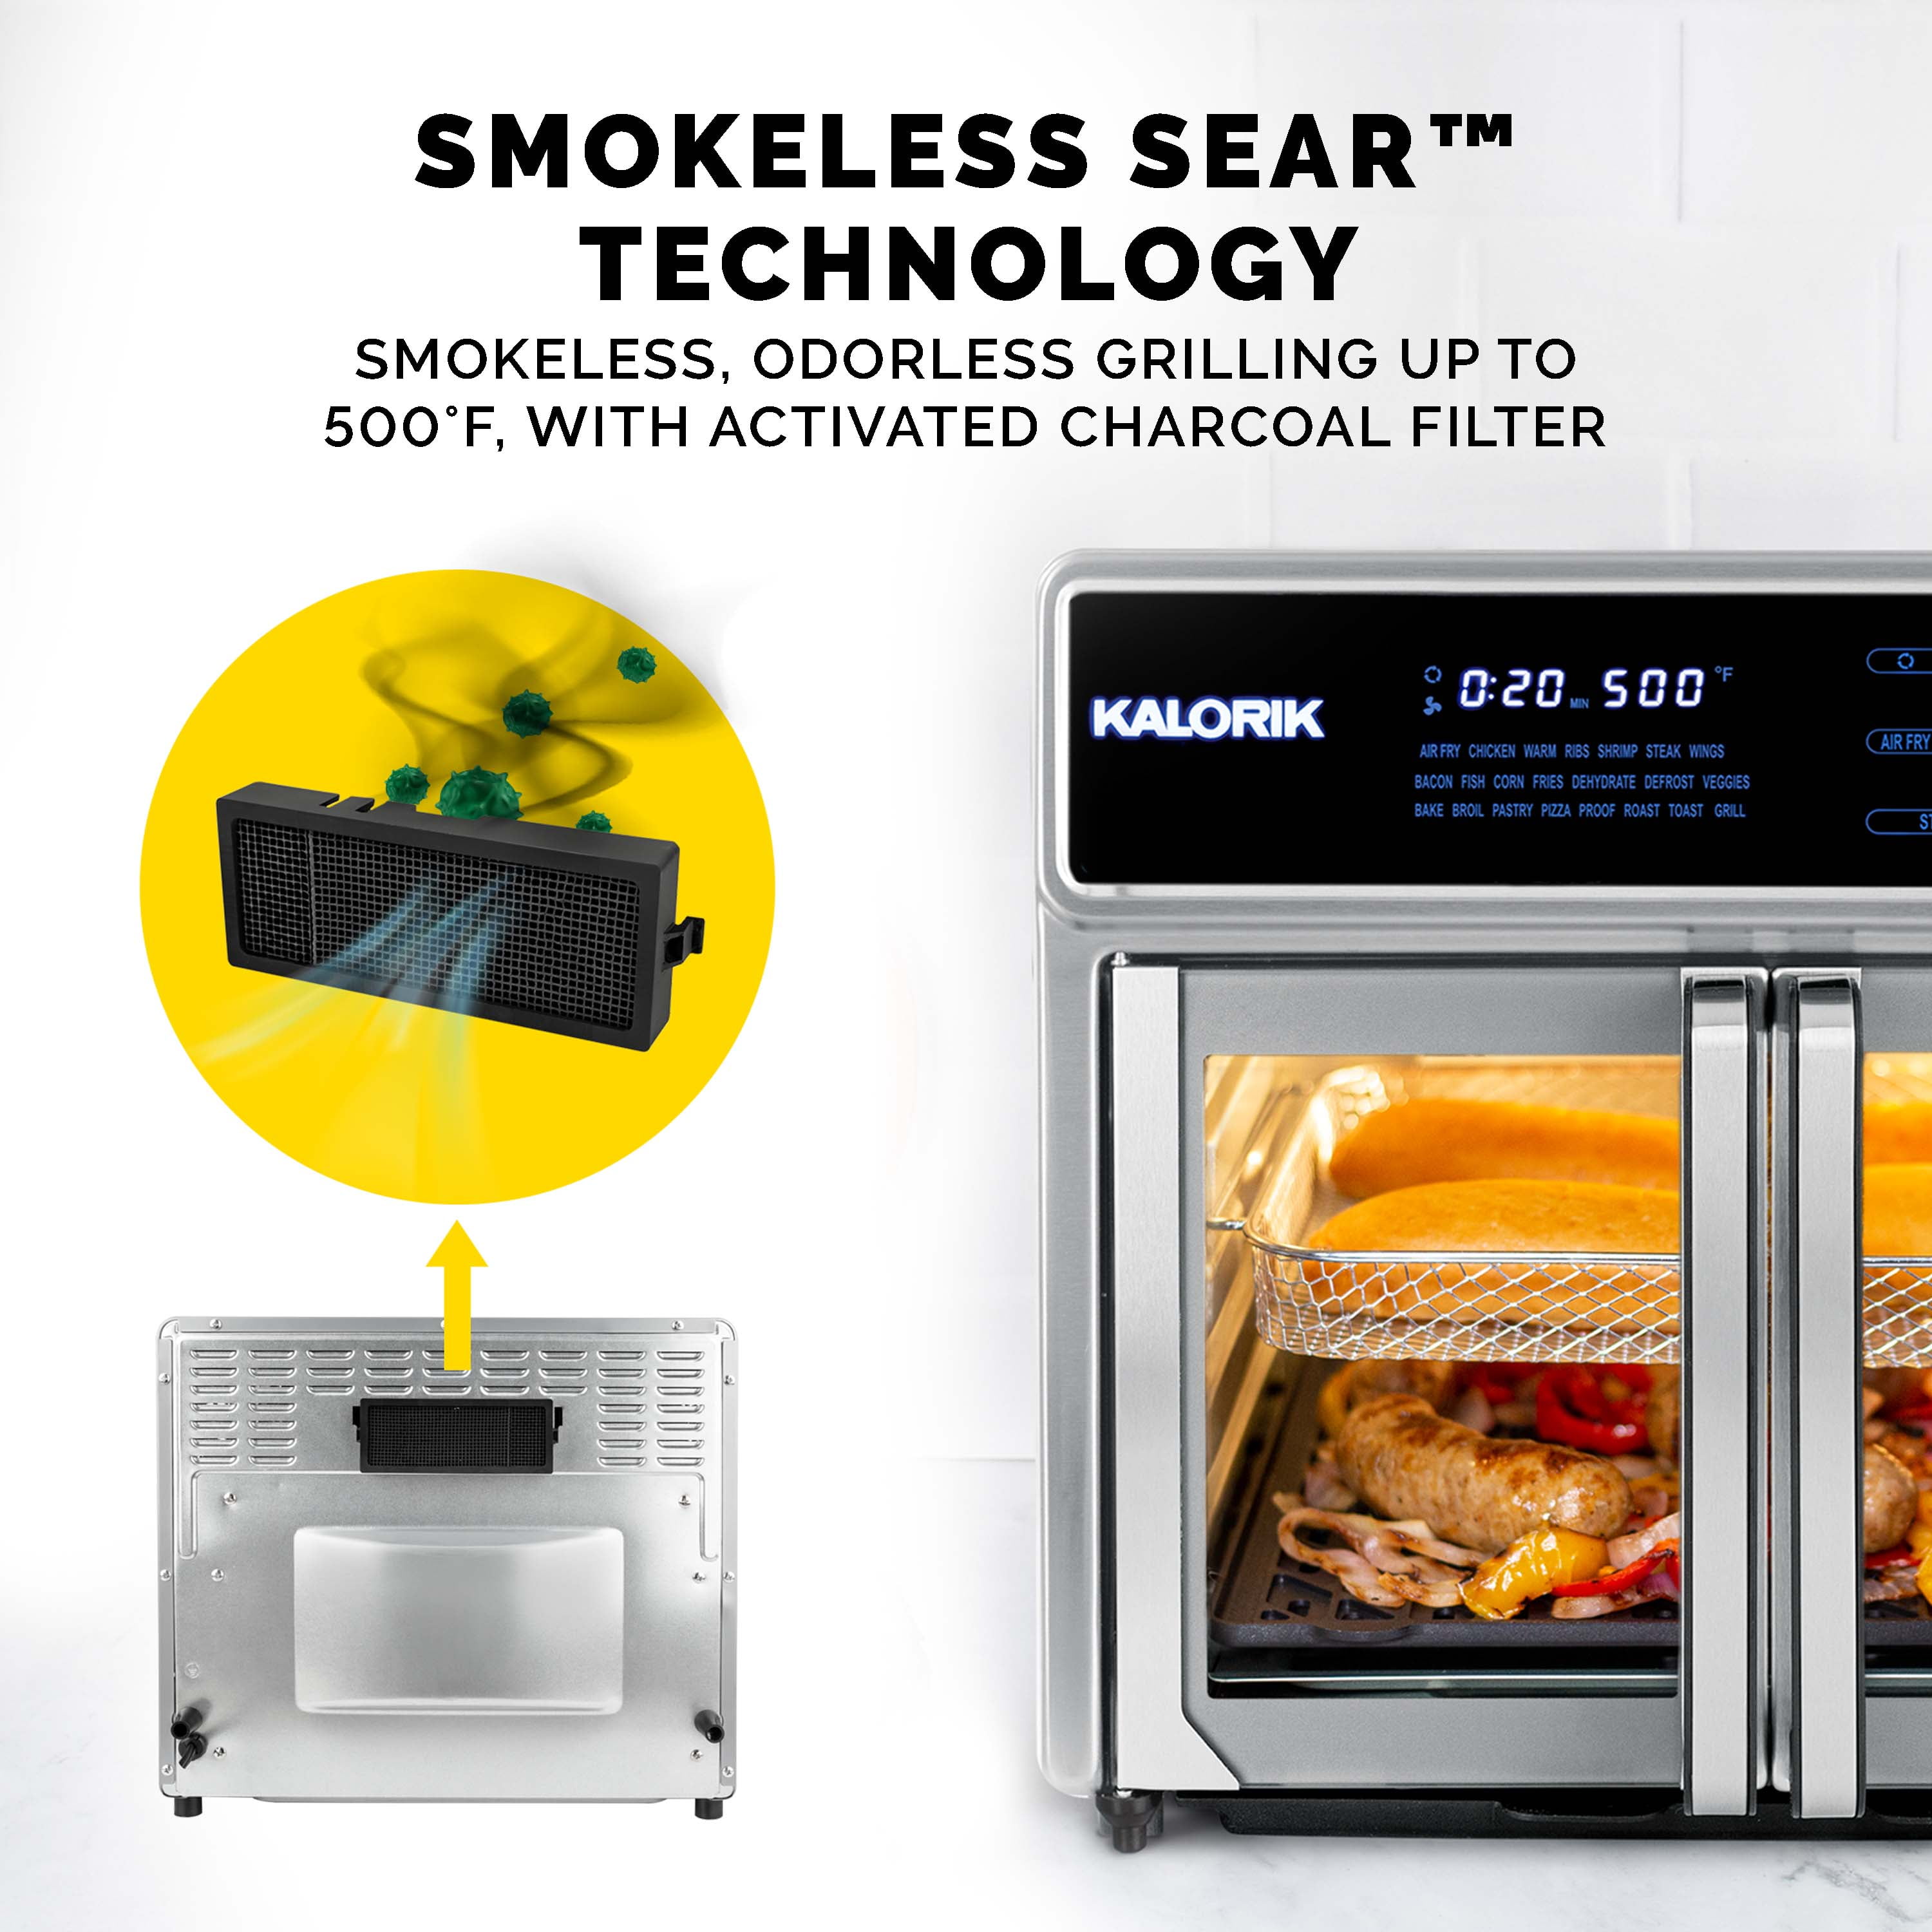 Kalorik MAXX 26 QT Digital Air Fryer Oven